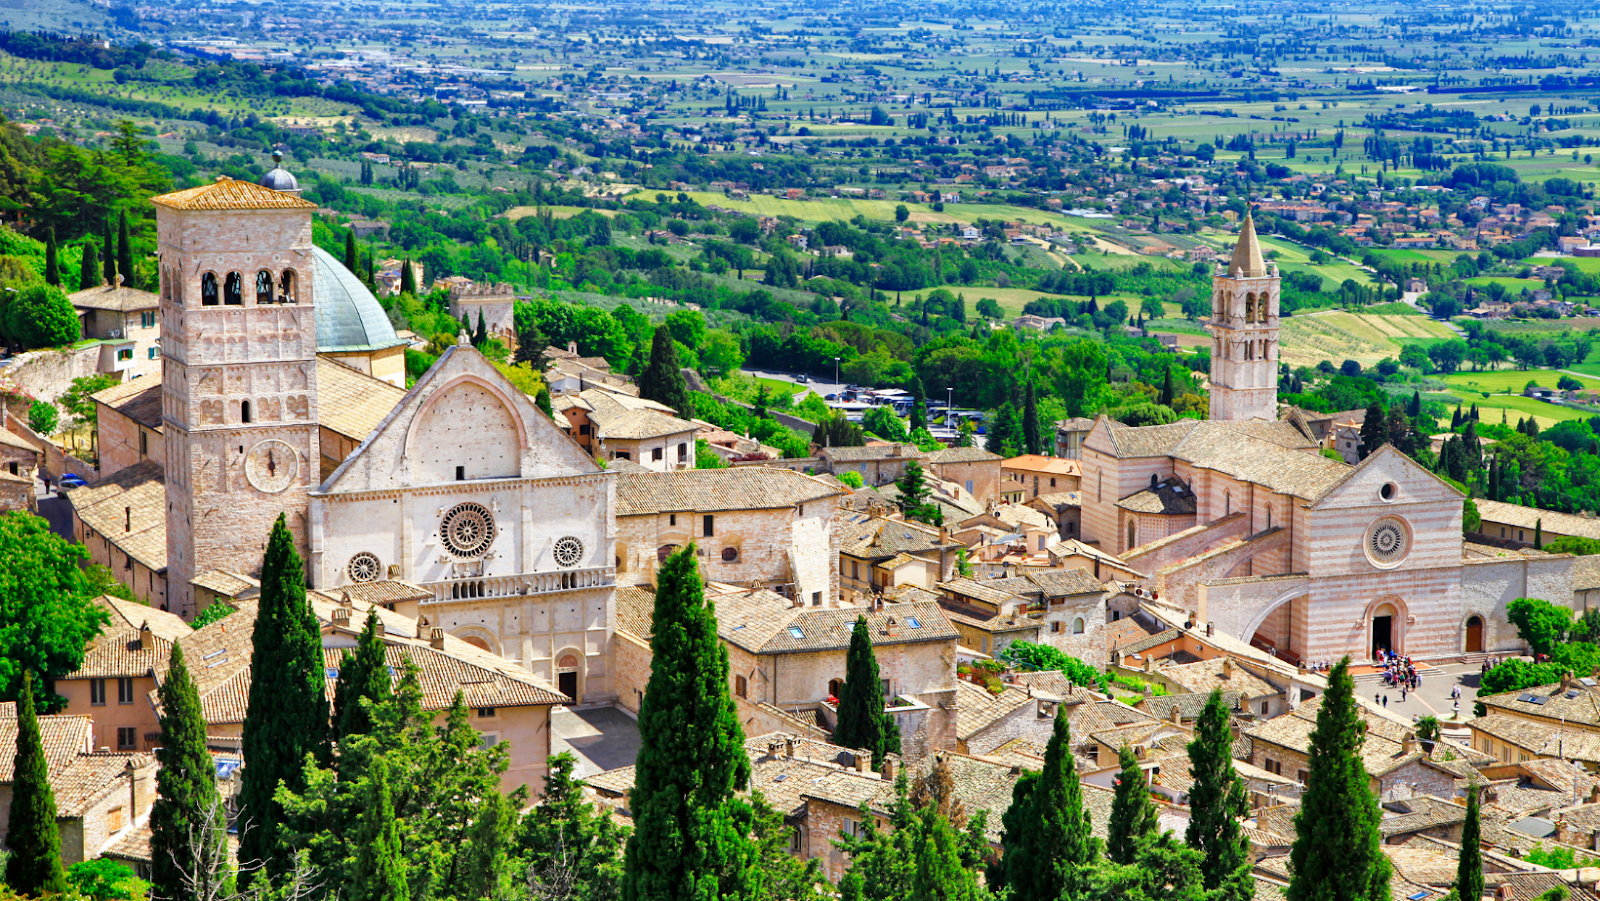 Una veduta di Assisi, con la Cattedrale di San Rufino, a sinistra, e la Basilica di Santa Chiara, a destra